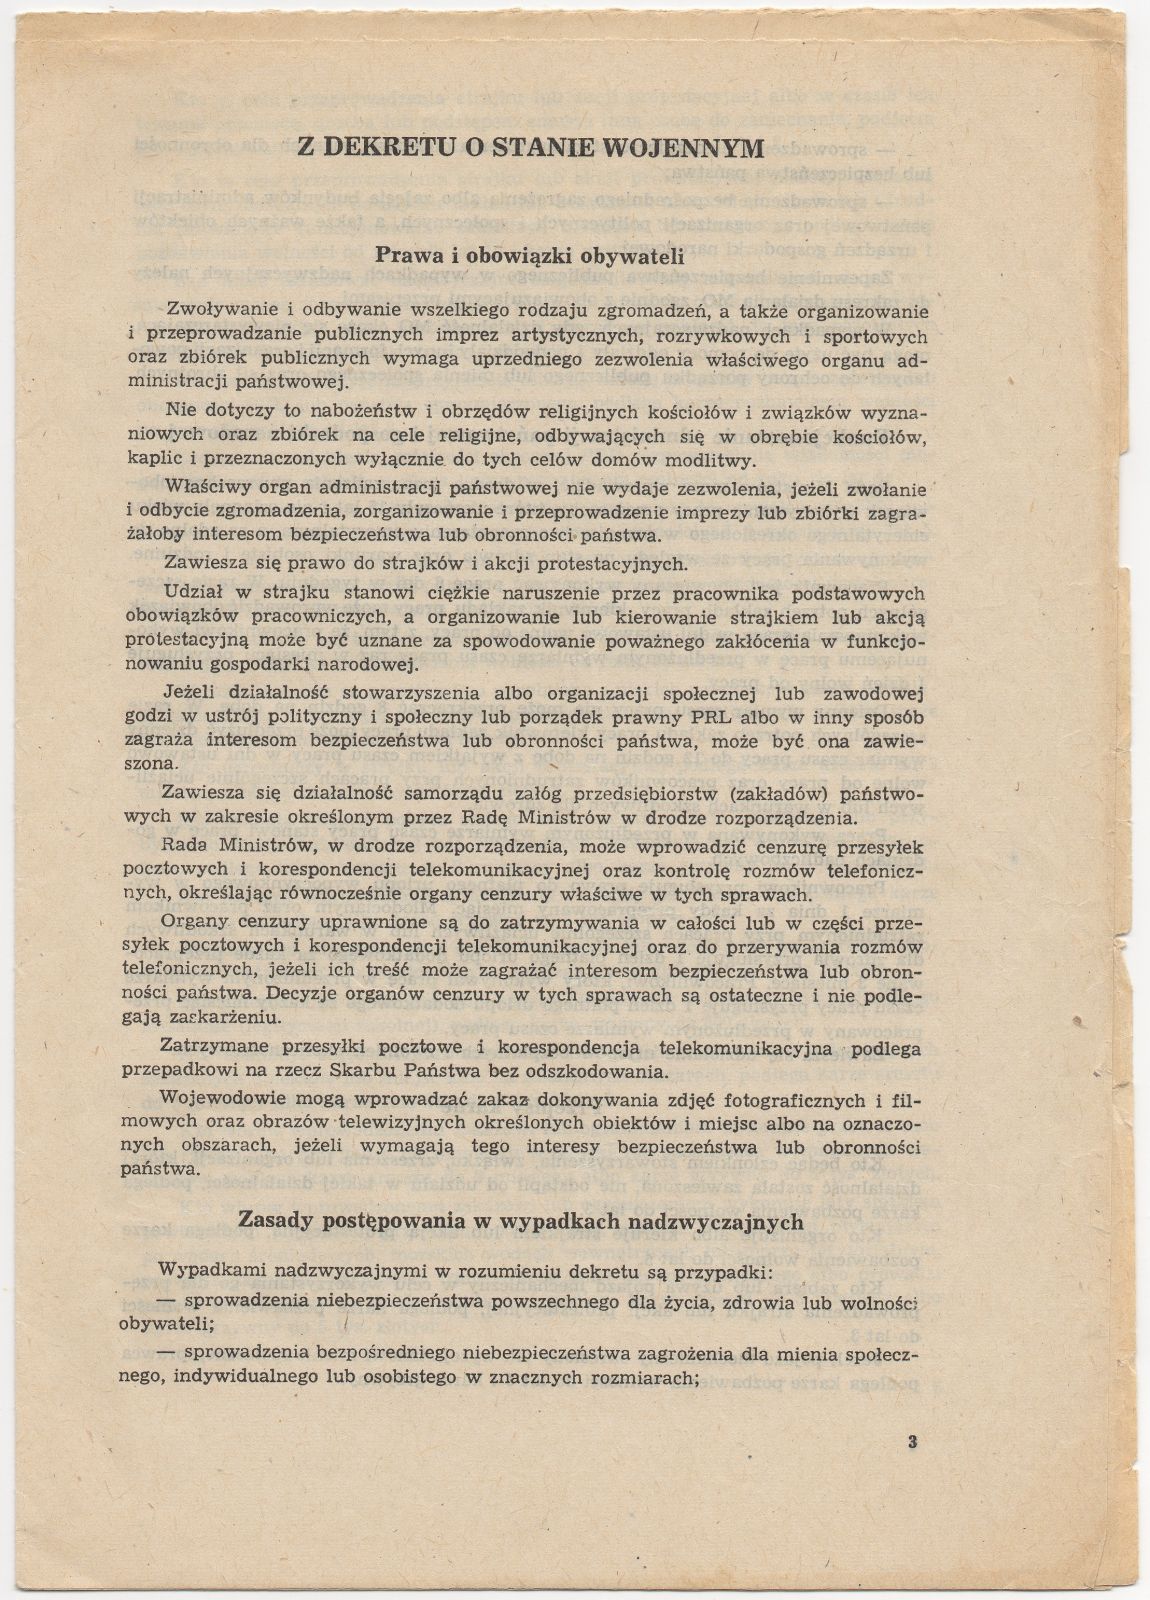 * Początek Stanu Wojennego - 13.12.1981